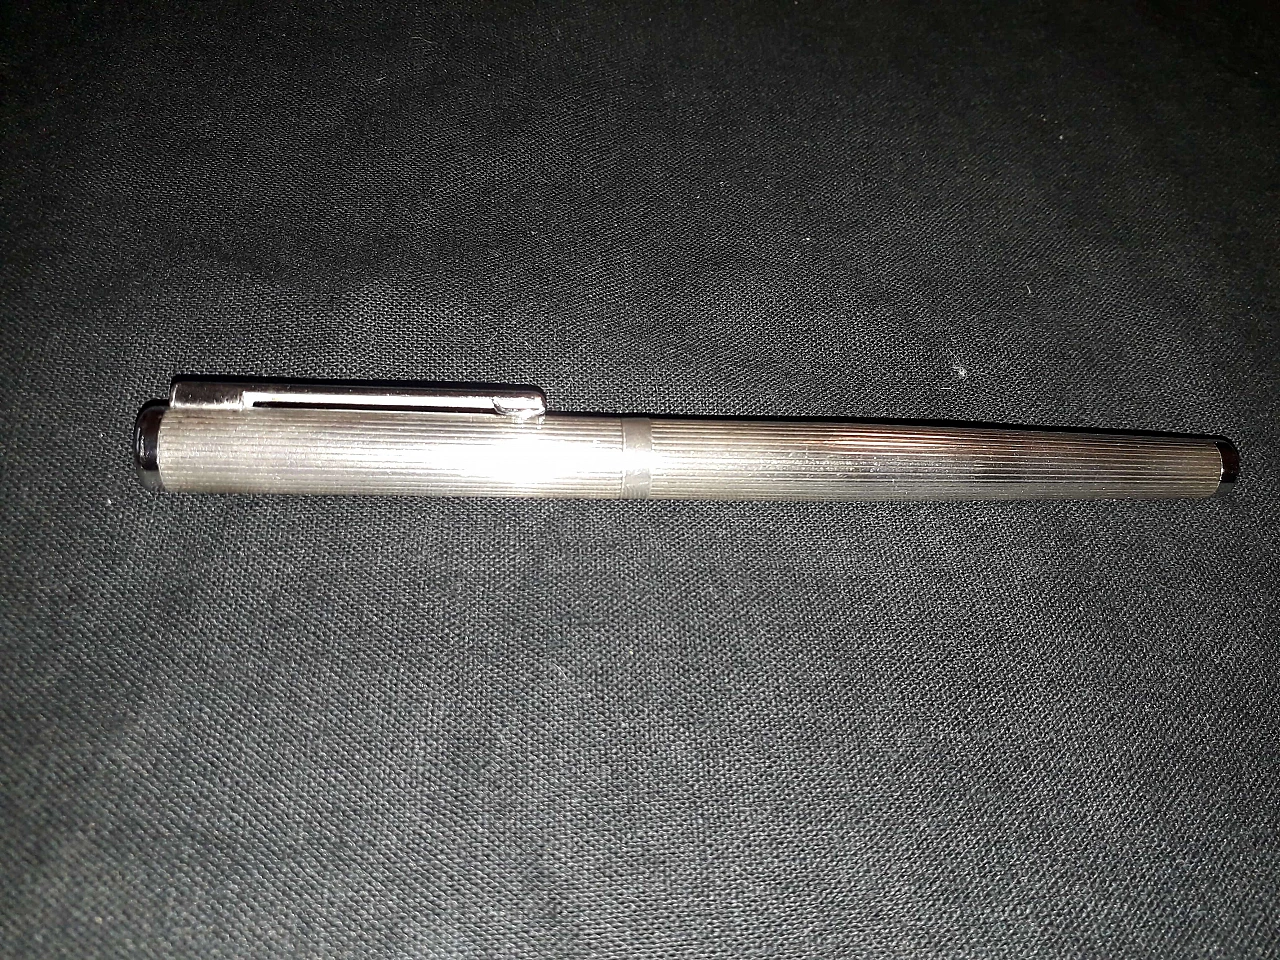 Ferrari silver stylographic pen 1177958